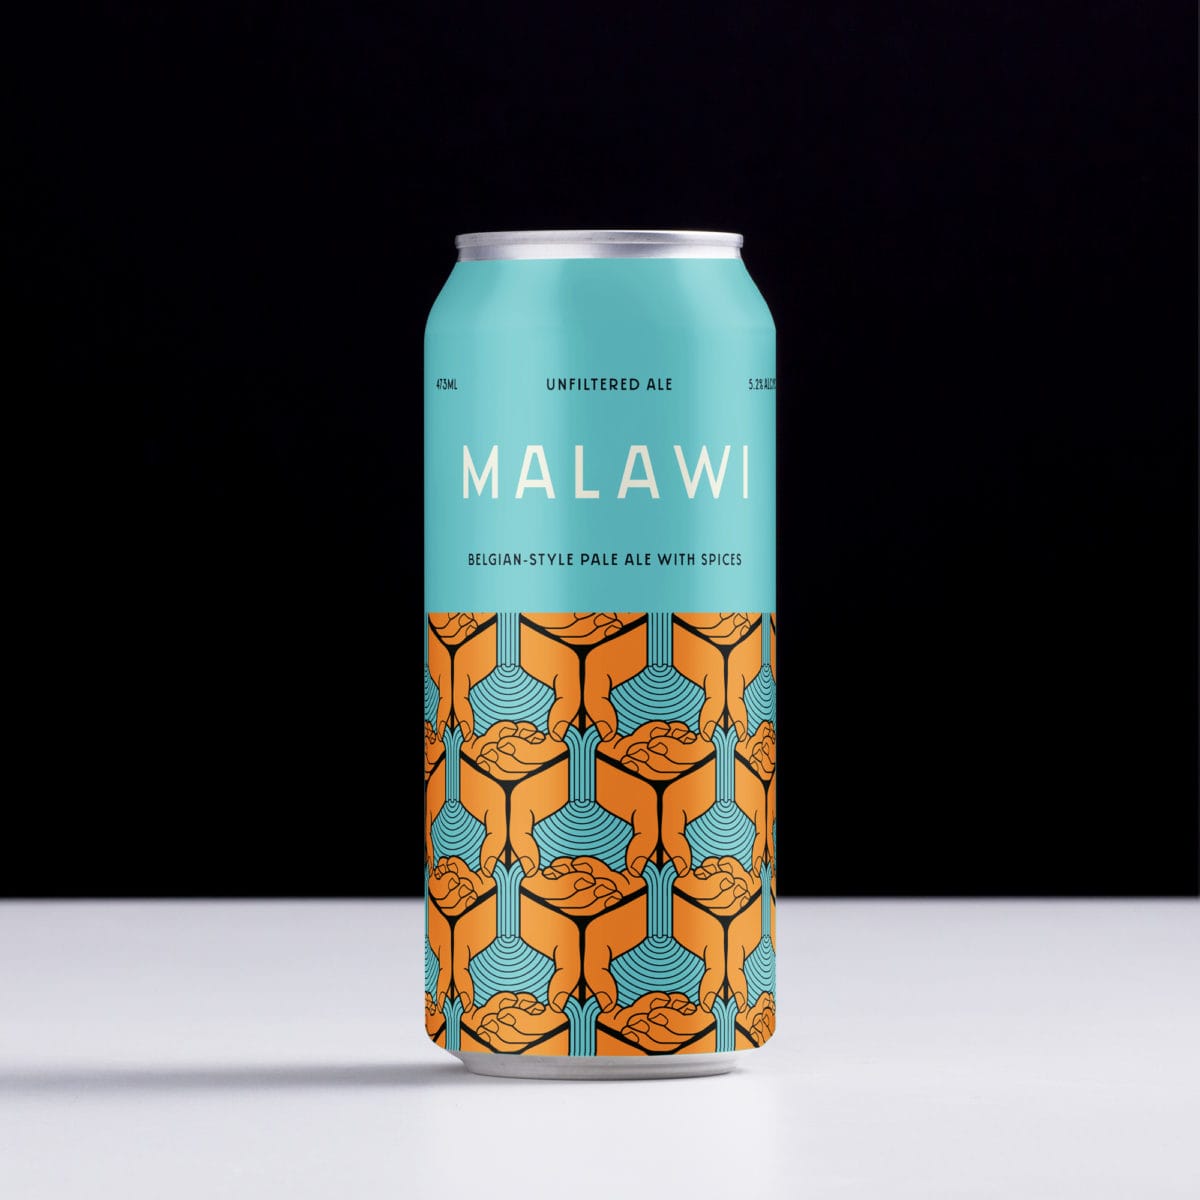 Malawi by Dageraad Brewing